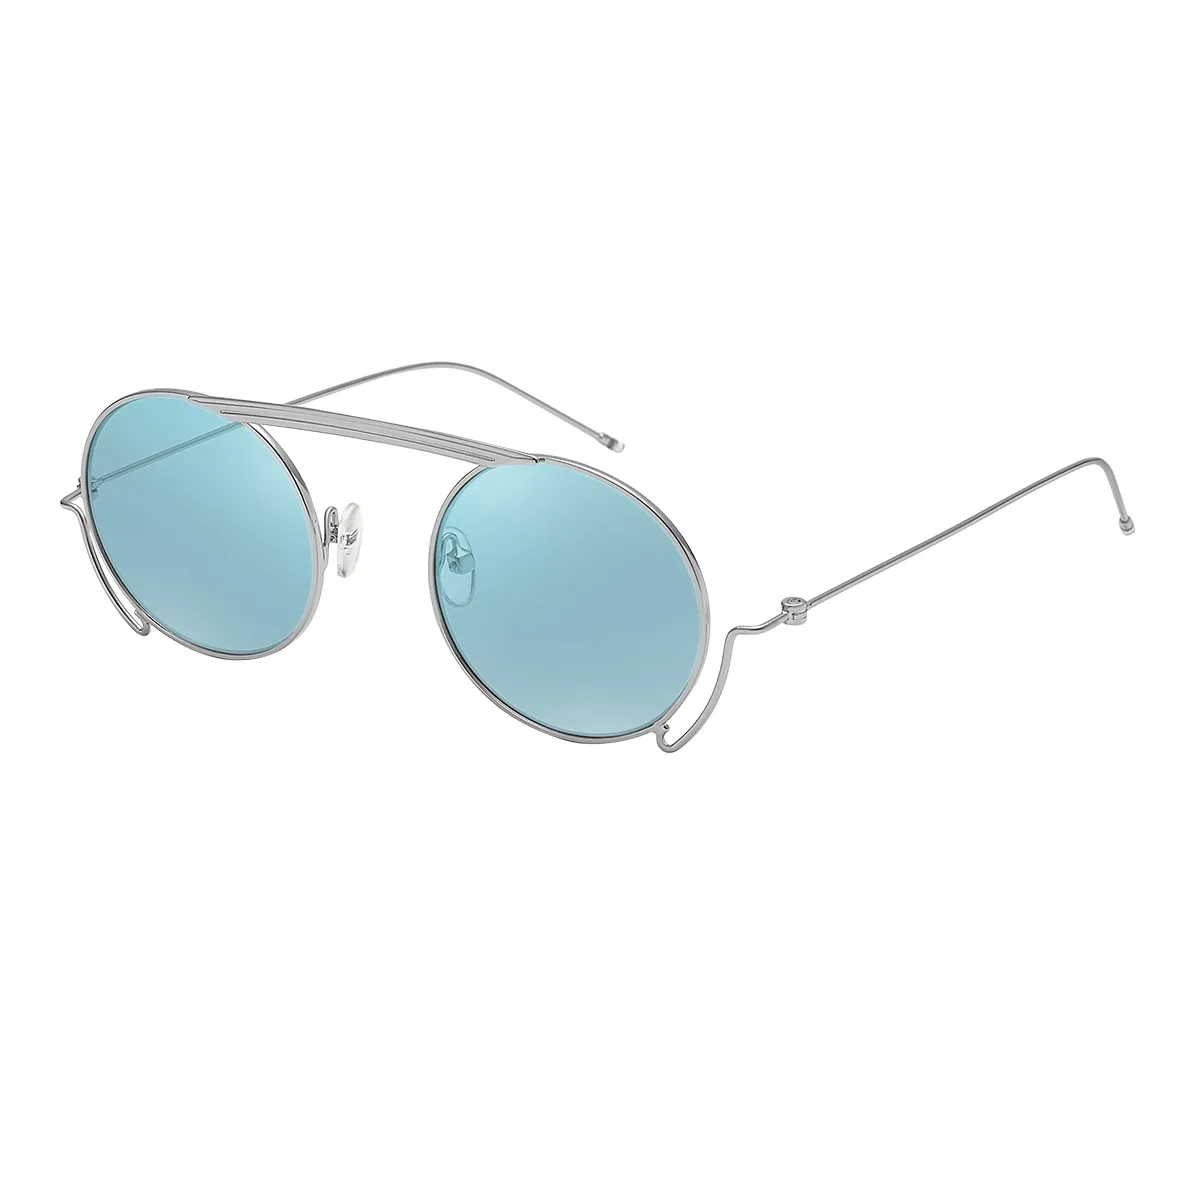 Cooper - Round Silver Sunglasses for Women